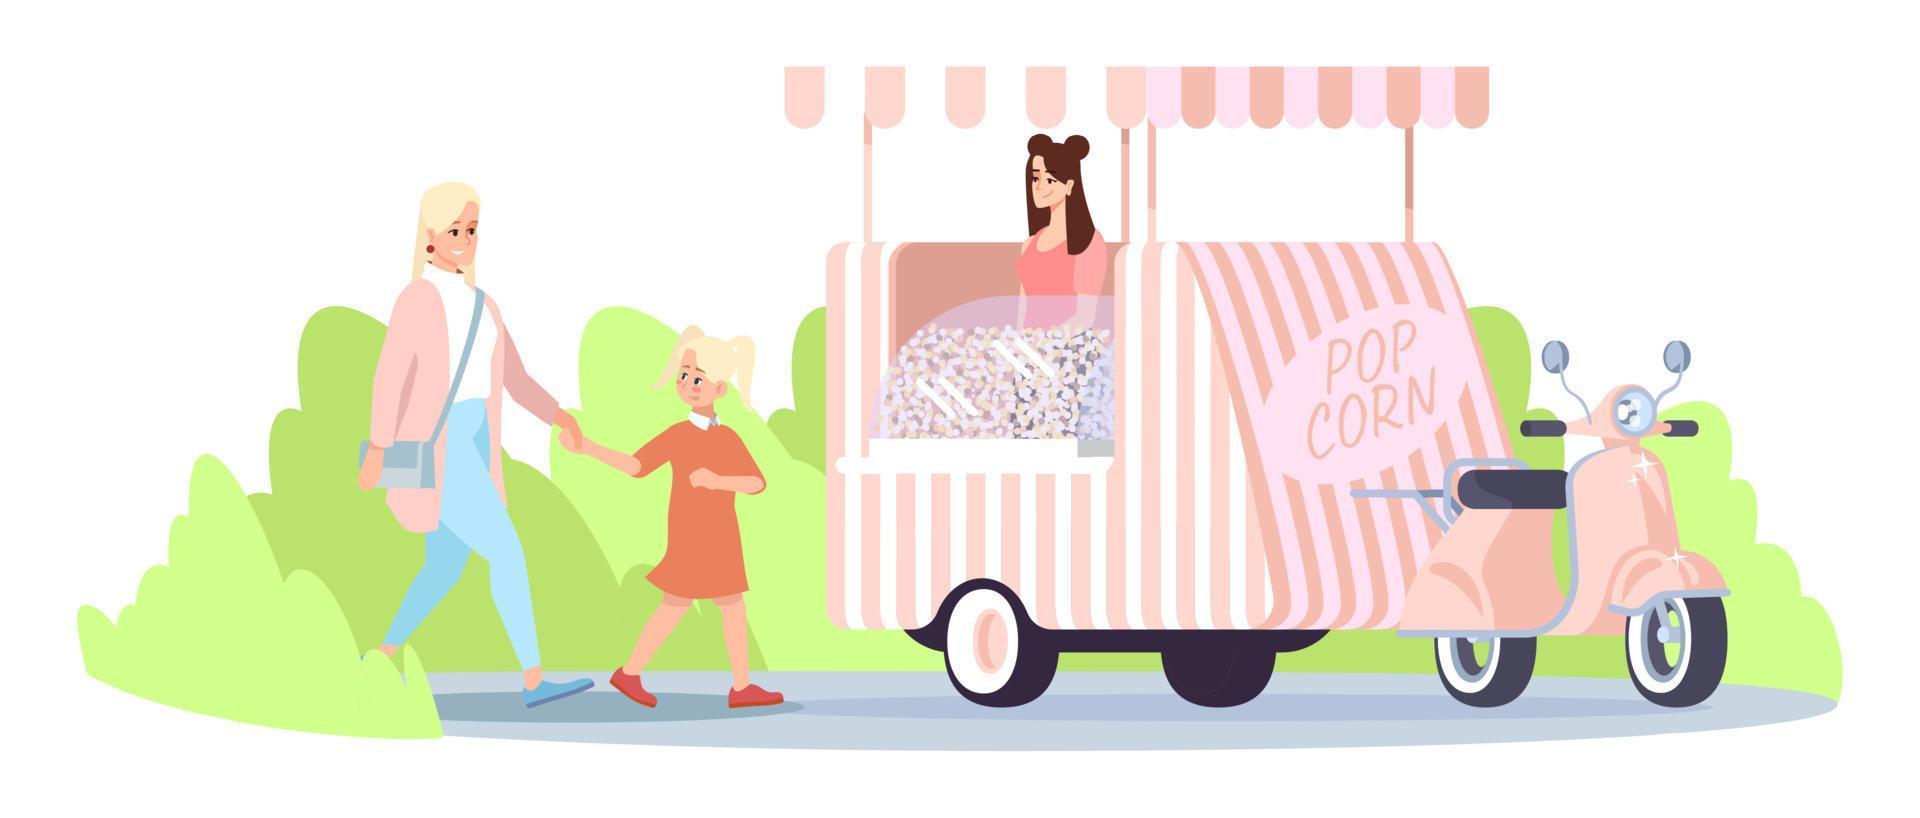 flache vektorillustration des popcorn-imbisswagens. Mutter mit Tochter zu Fuß zum Kauf von Popcorn auf der Stadtmesse. straßenlebensmittelfahrzeug, verkäufer, käufer isolierte zeichentrickfiguren auf weißem hintergrund vektor